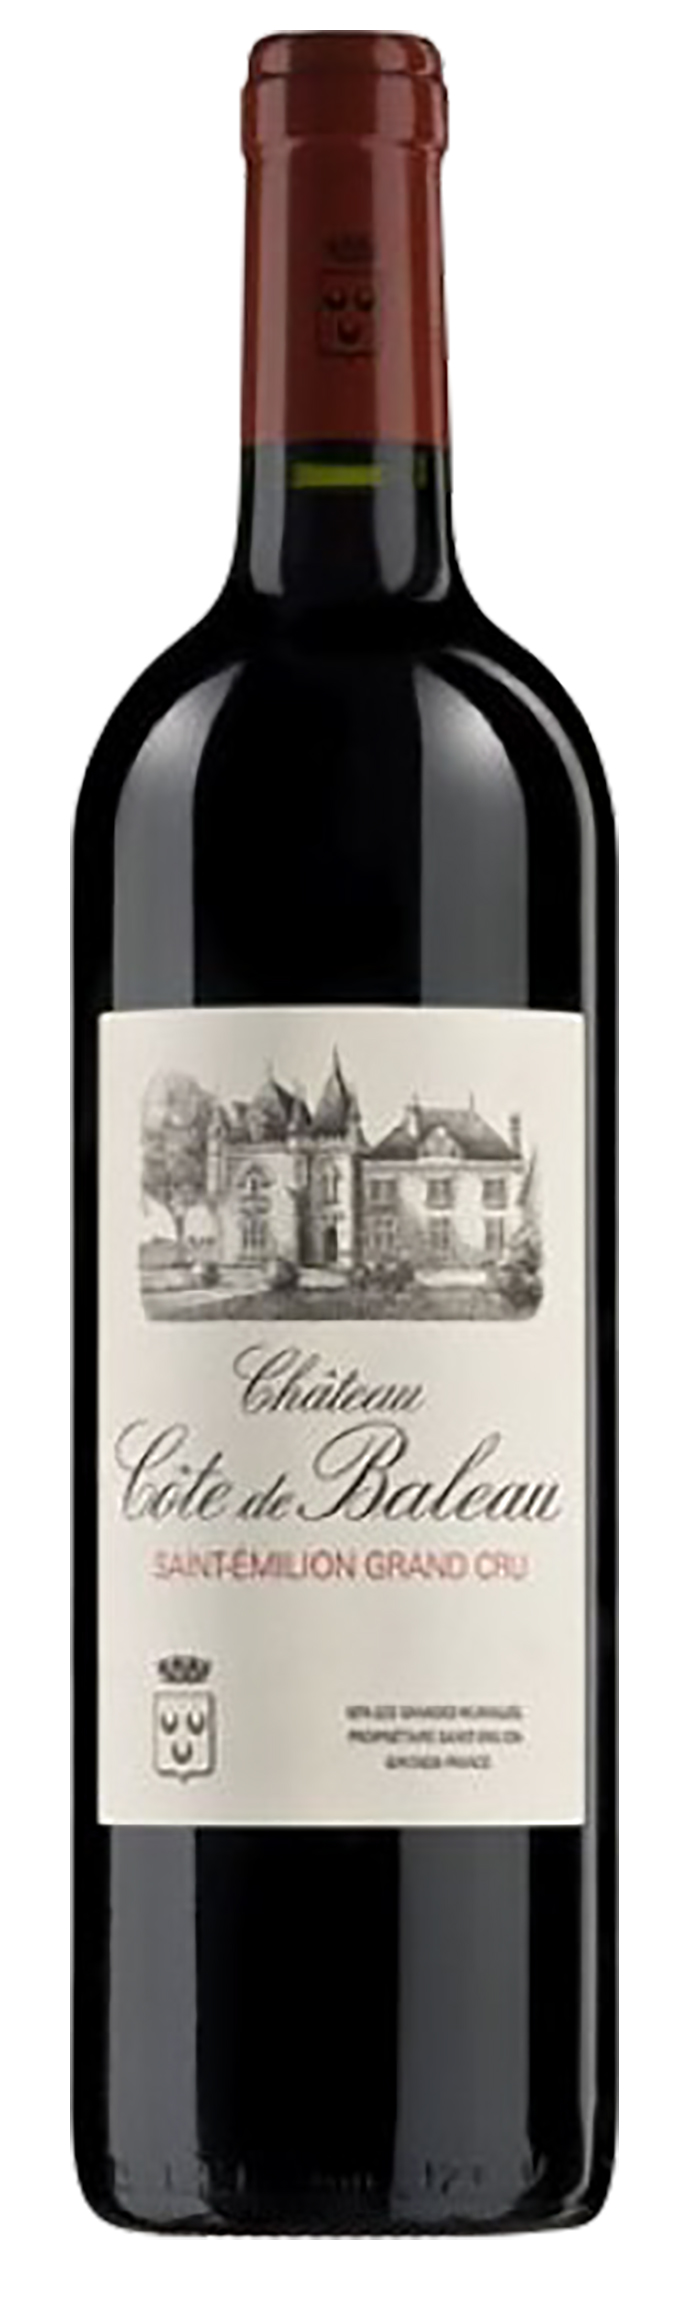 giá rượu Chateau Cote de Baleau